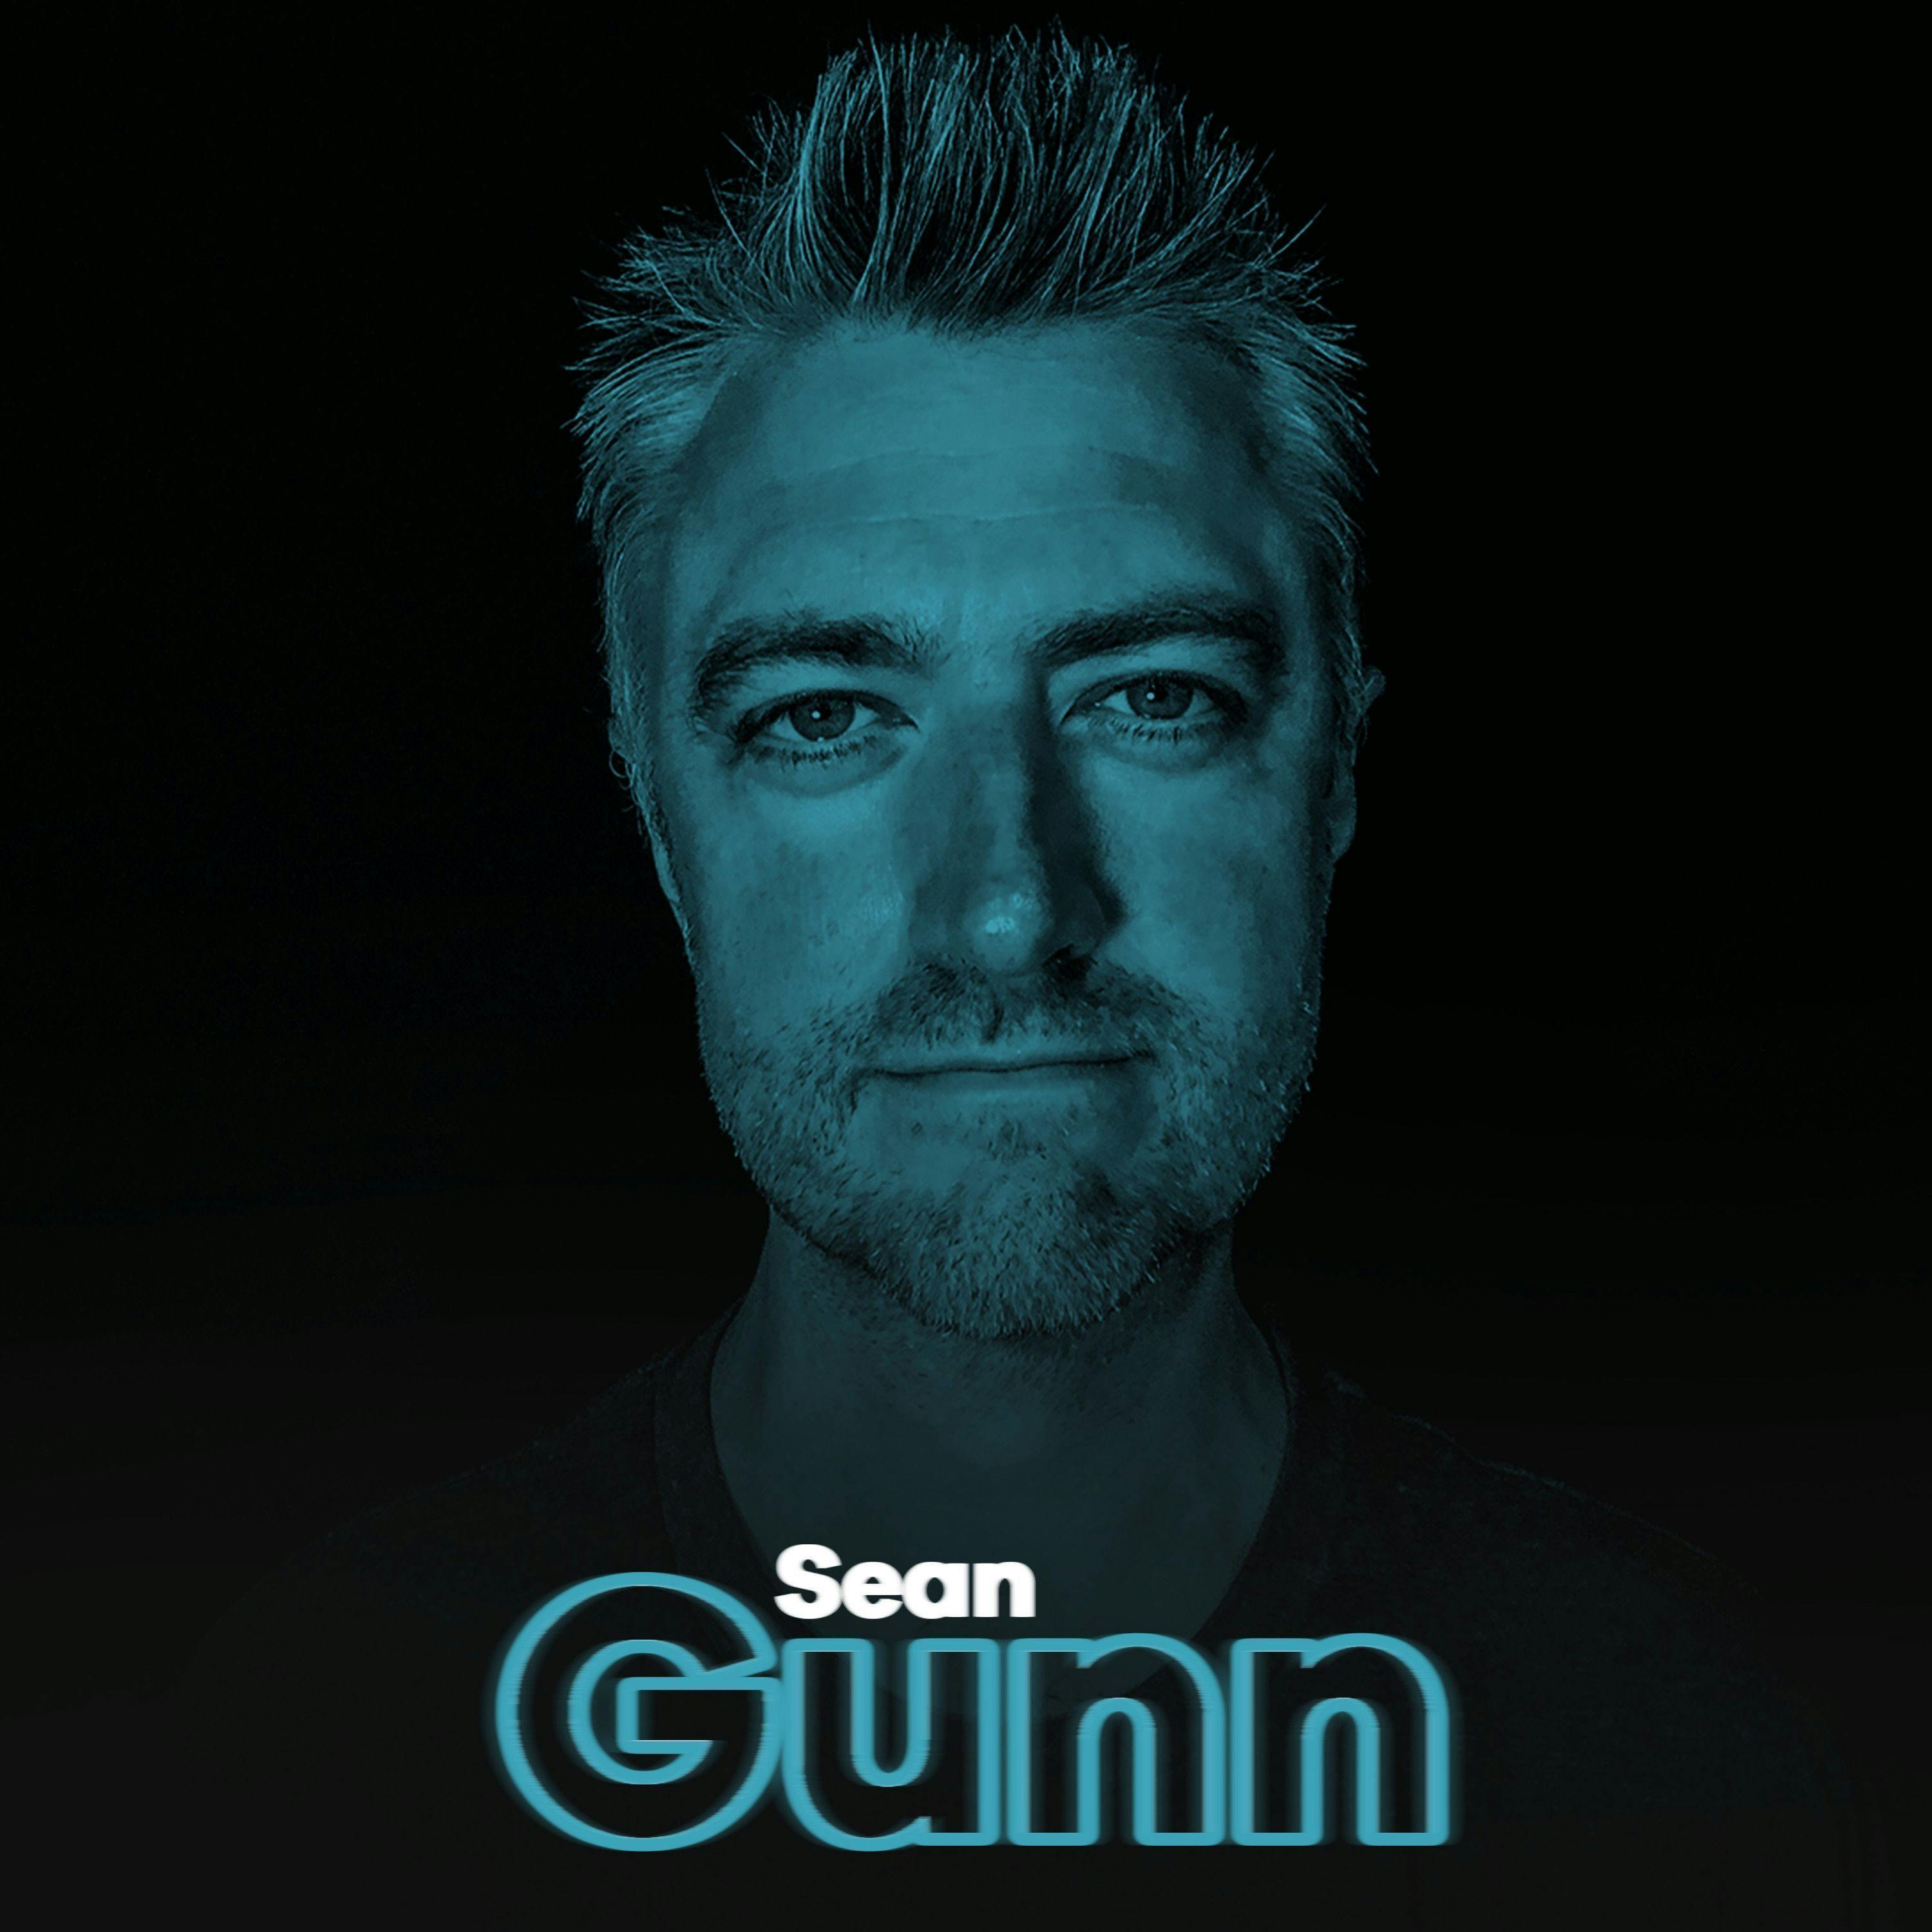 Sean Gunn